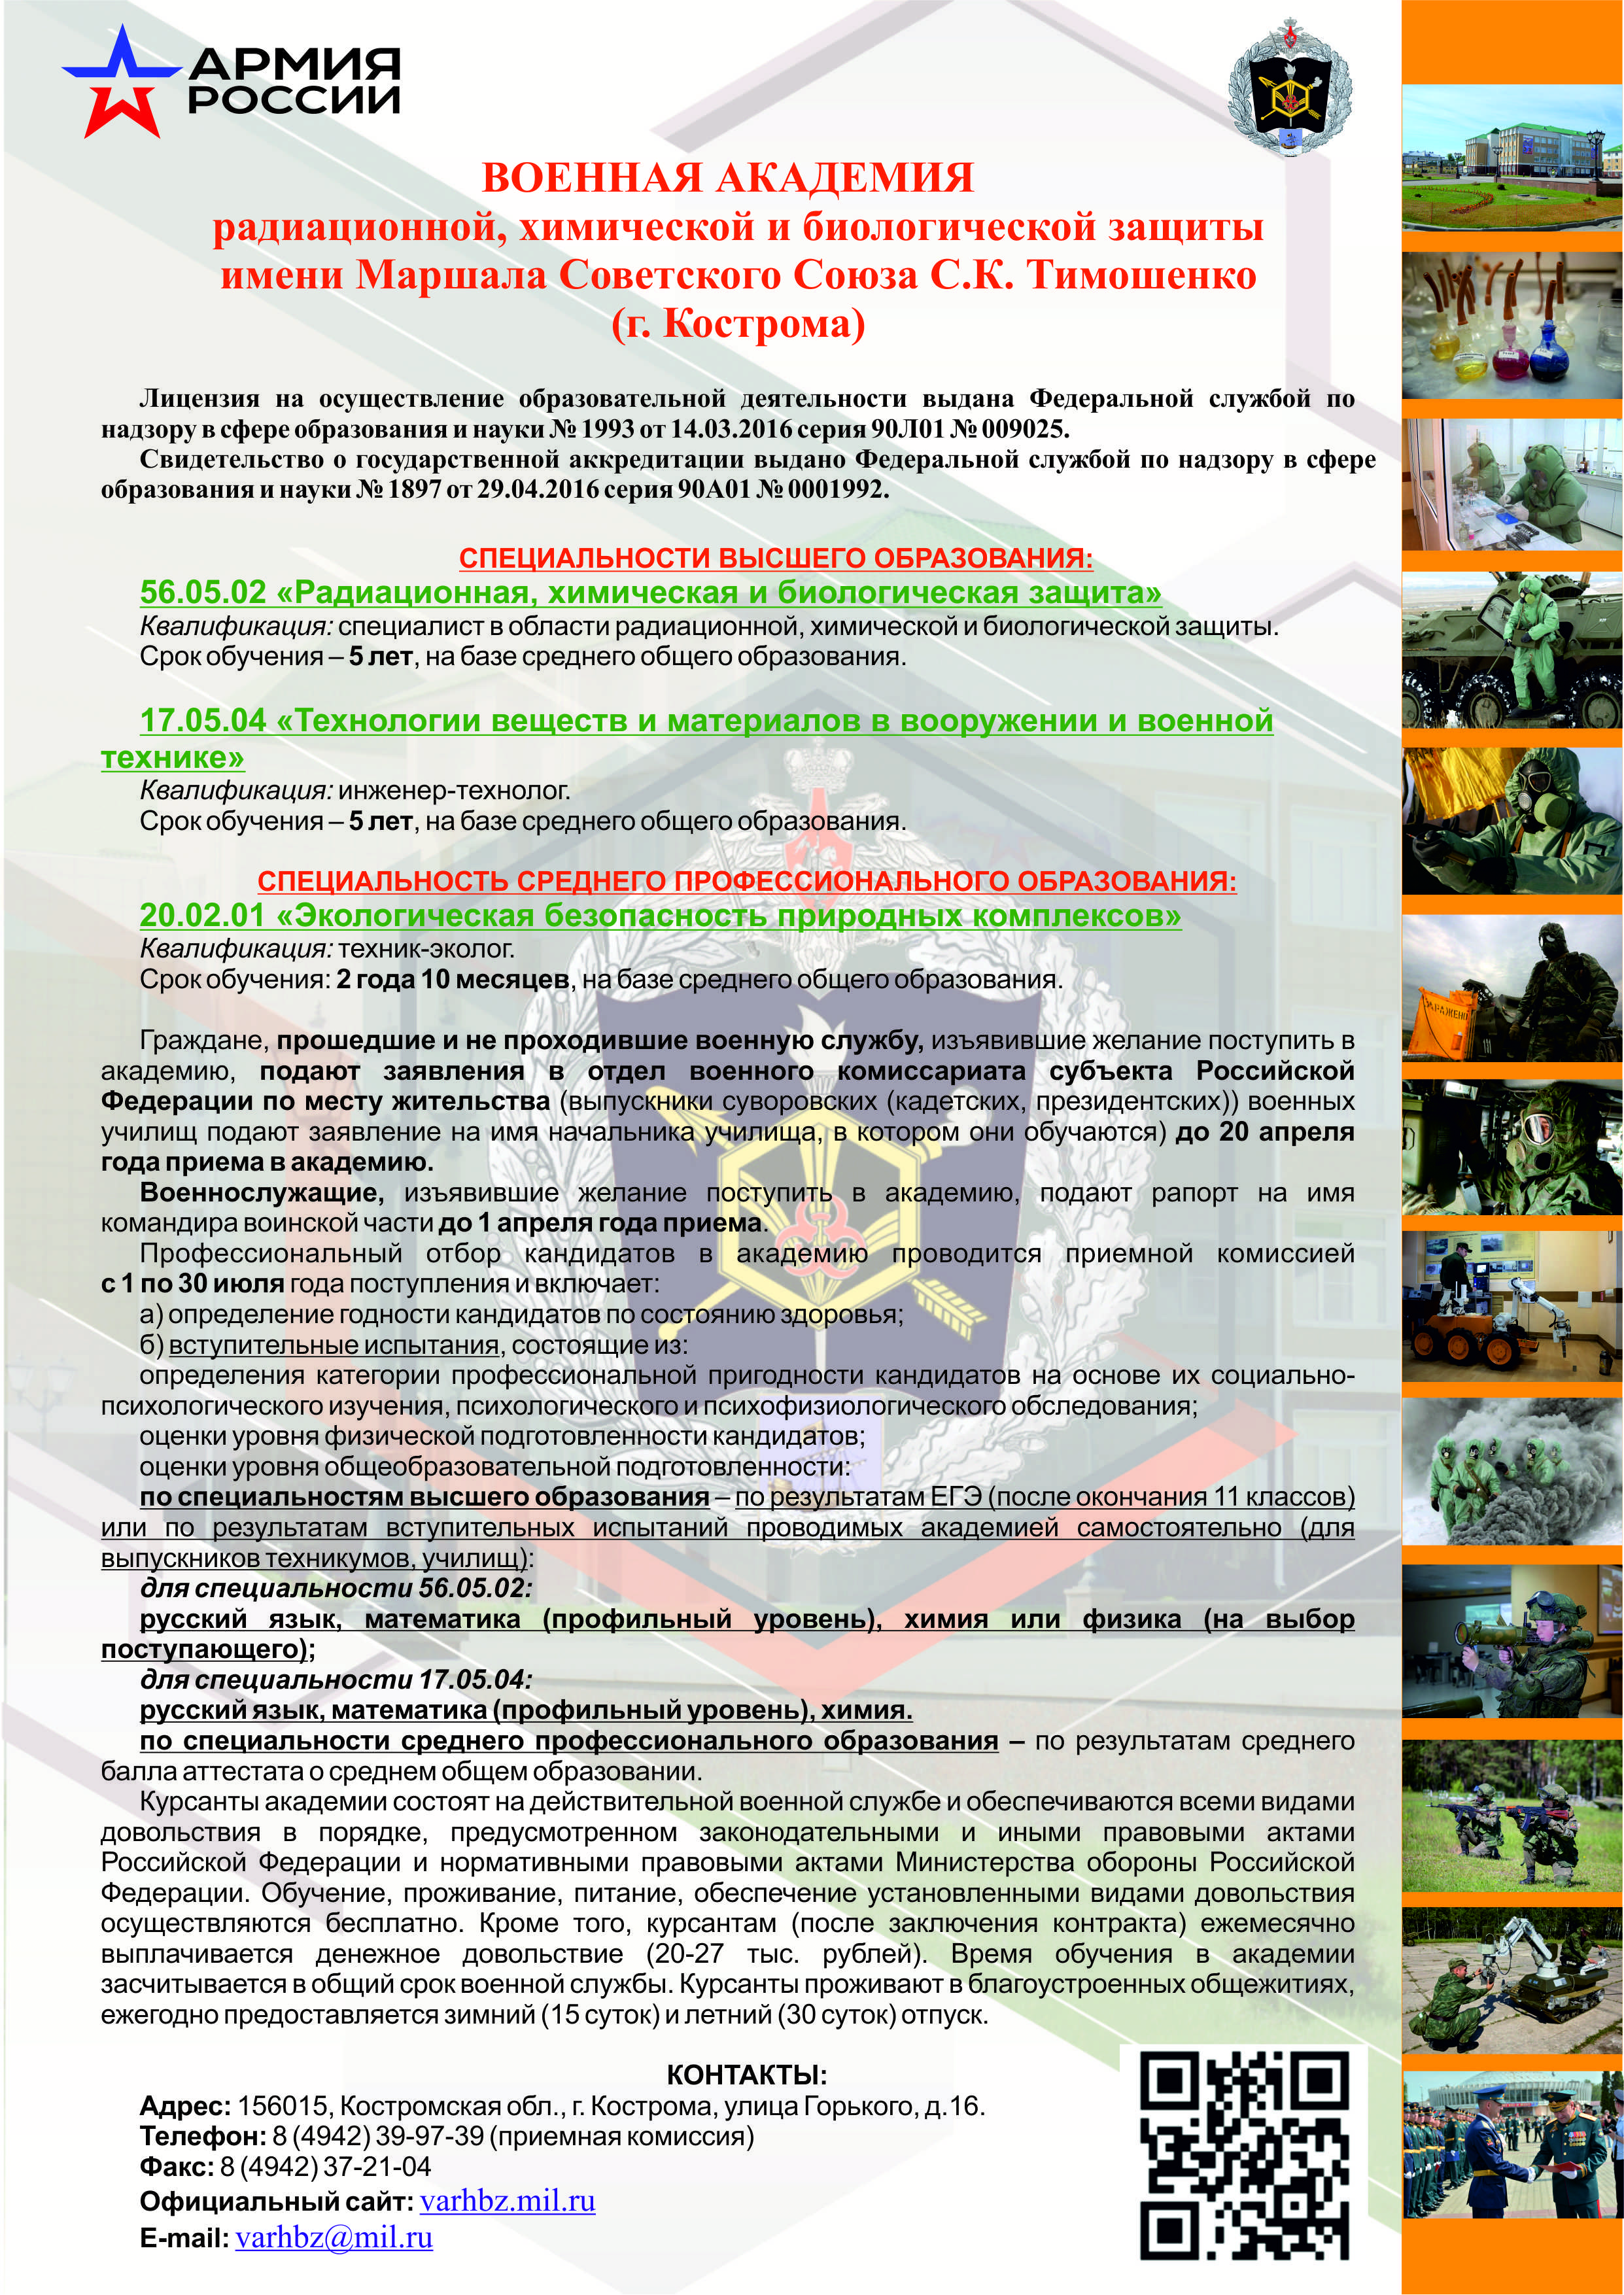 Военная академия радиационной, химической и биологической защиты имени Маршала Советского Союза С К Тимошенко приглашает на обучение